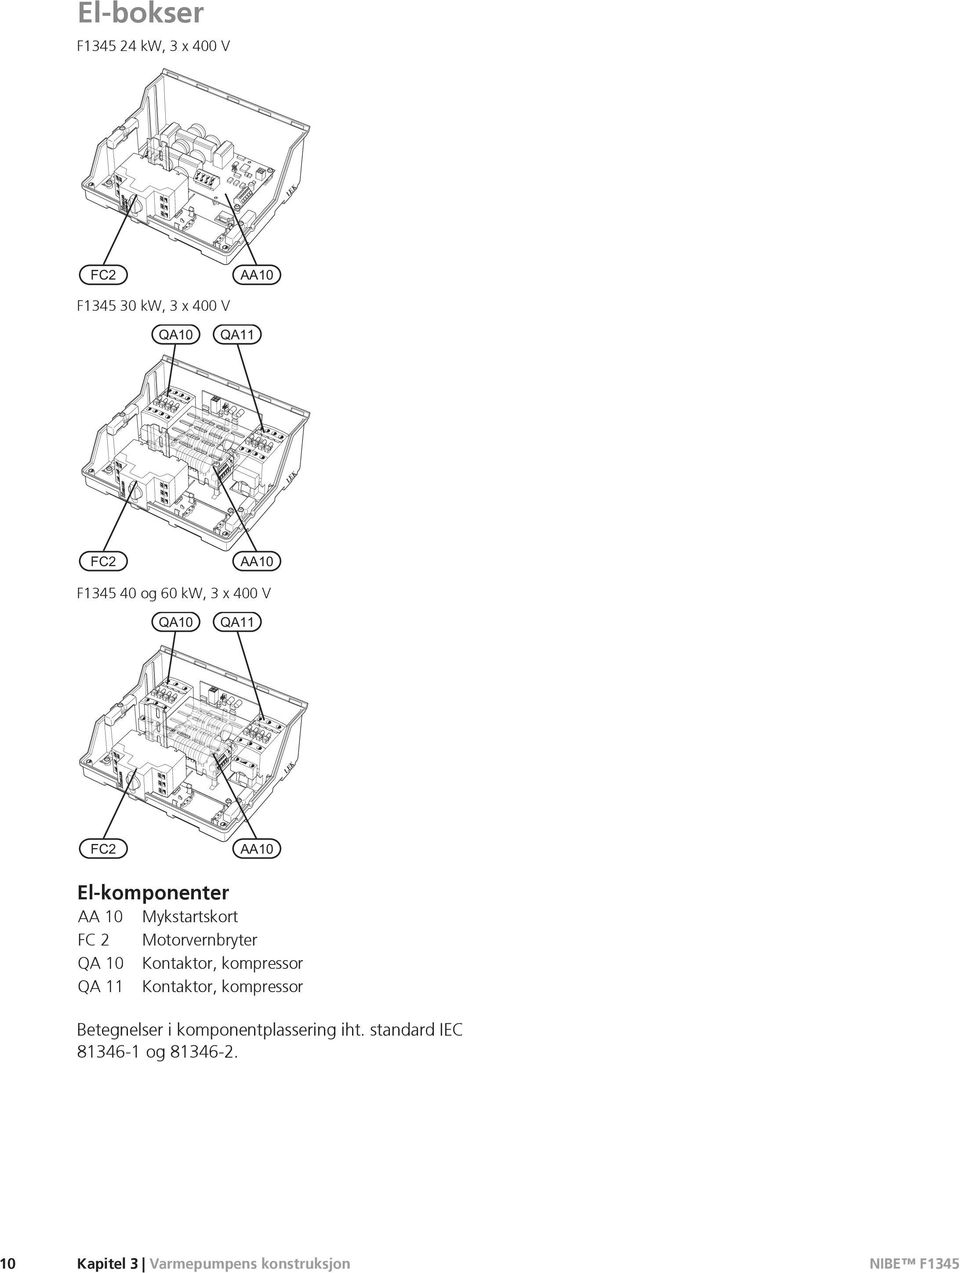 Kontaktor, kompressor QA 11 Kontaktor, kompressor Betegnelser i